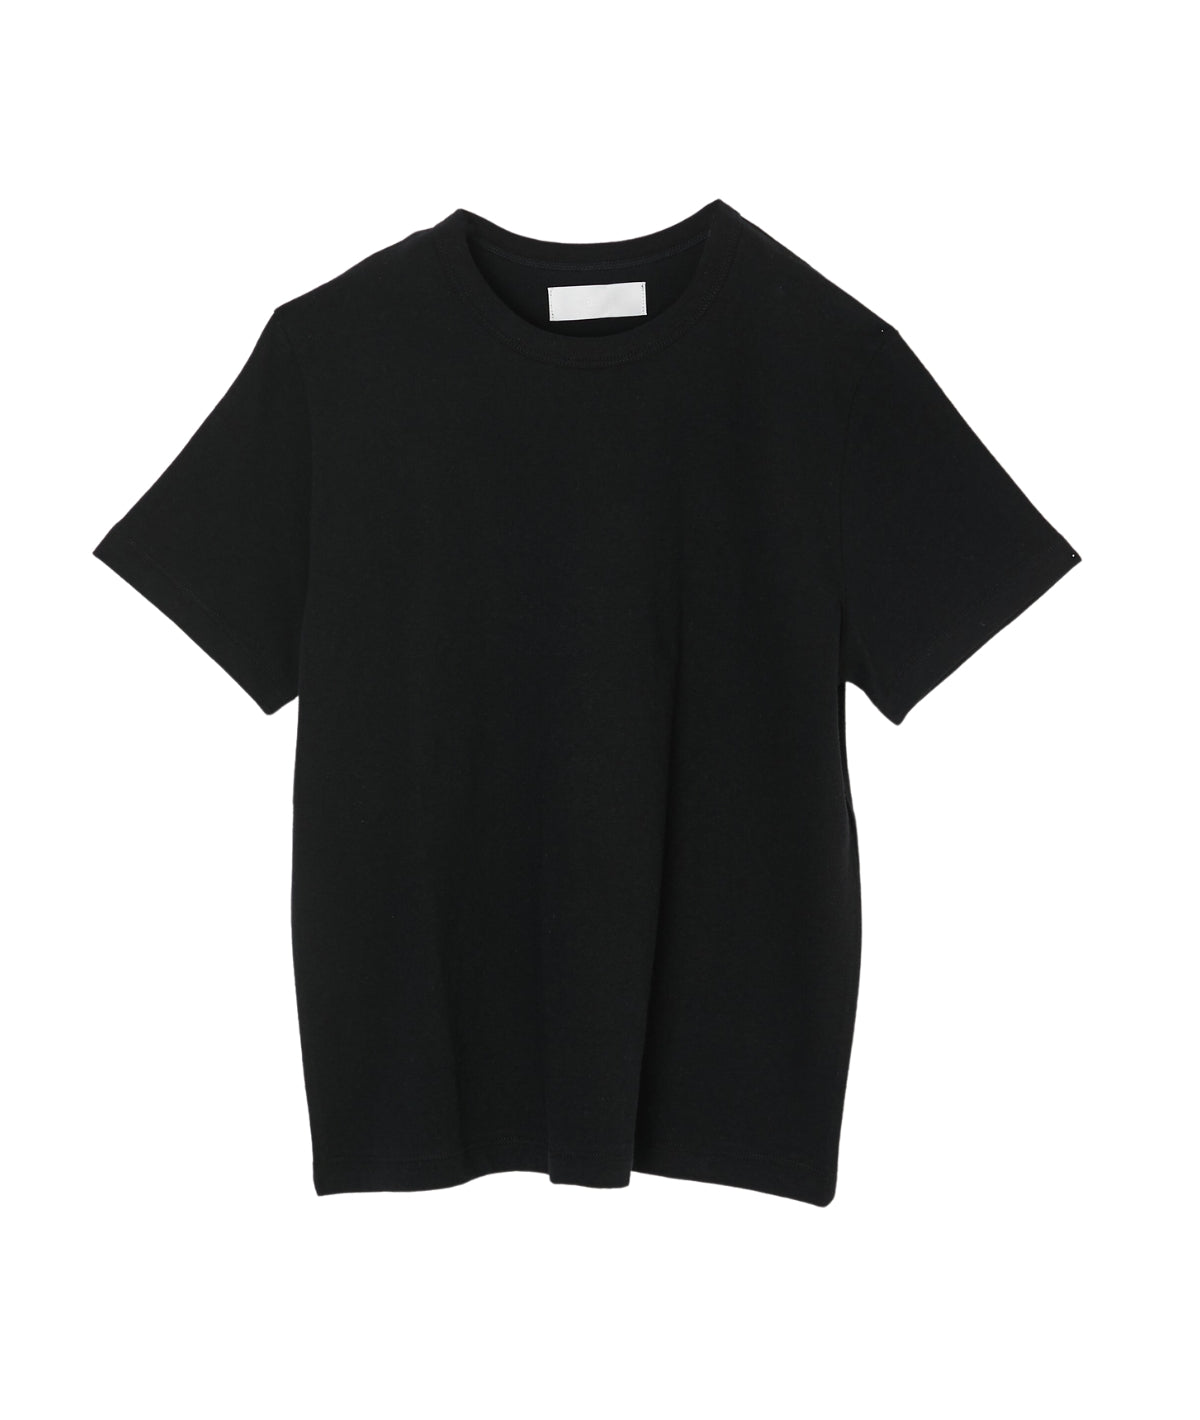 MV Basic Tee Shirt- Black